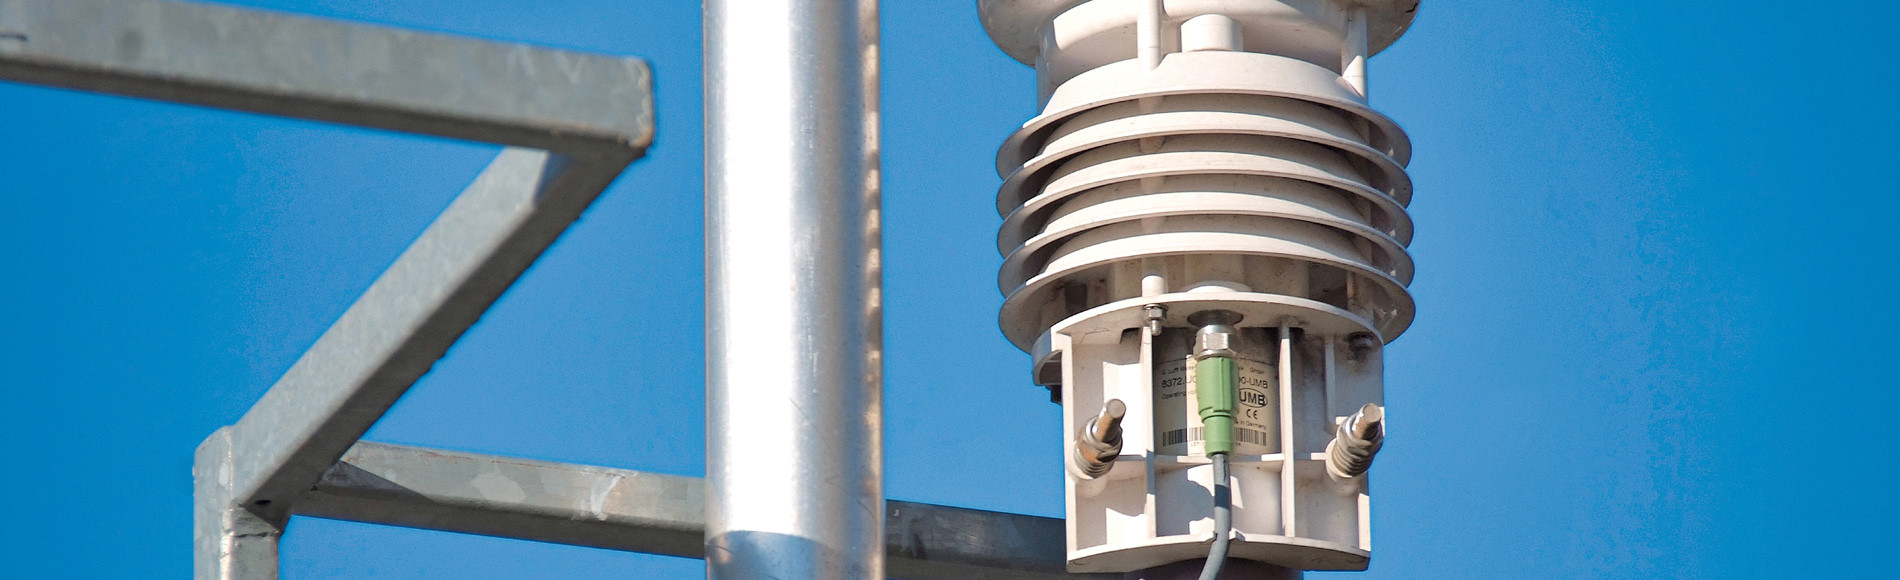 CityAir: мониторинг атмосферного воздуха для городов и промпредприятий